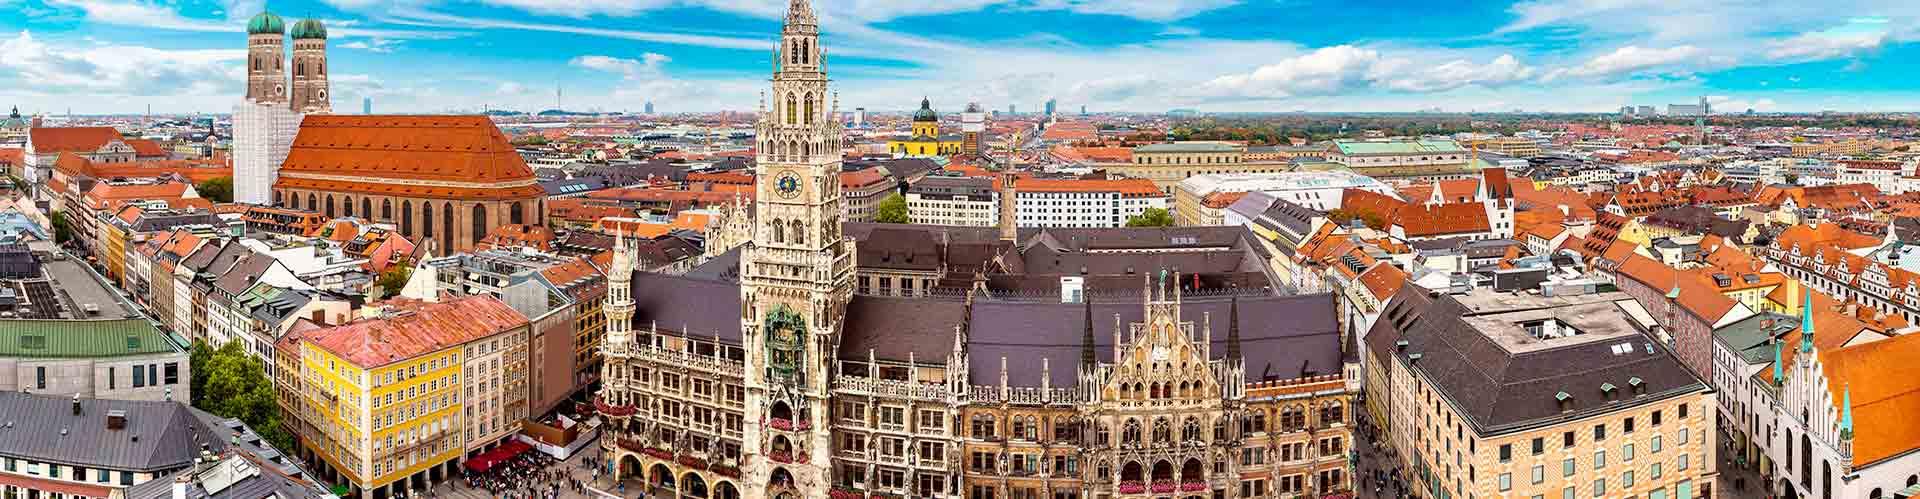 El Free Tour más Divertido en Munich